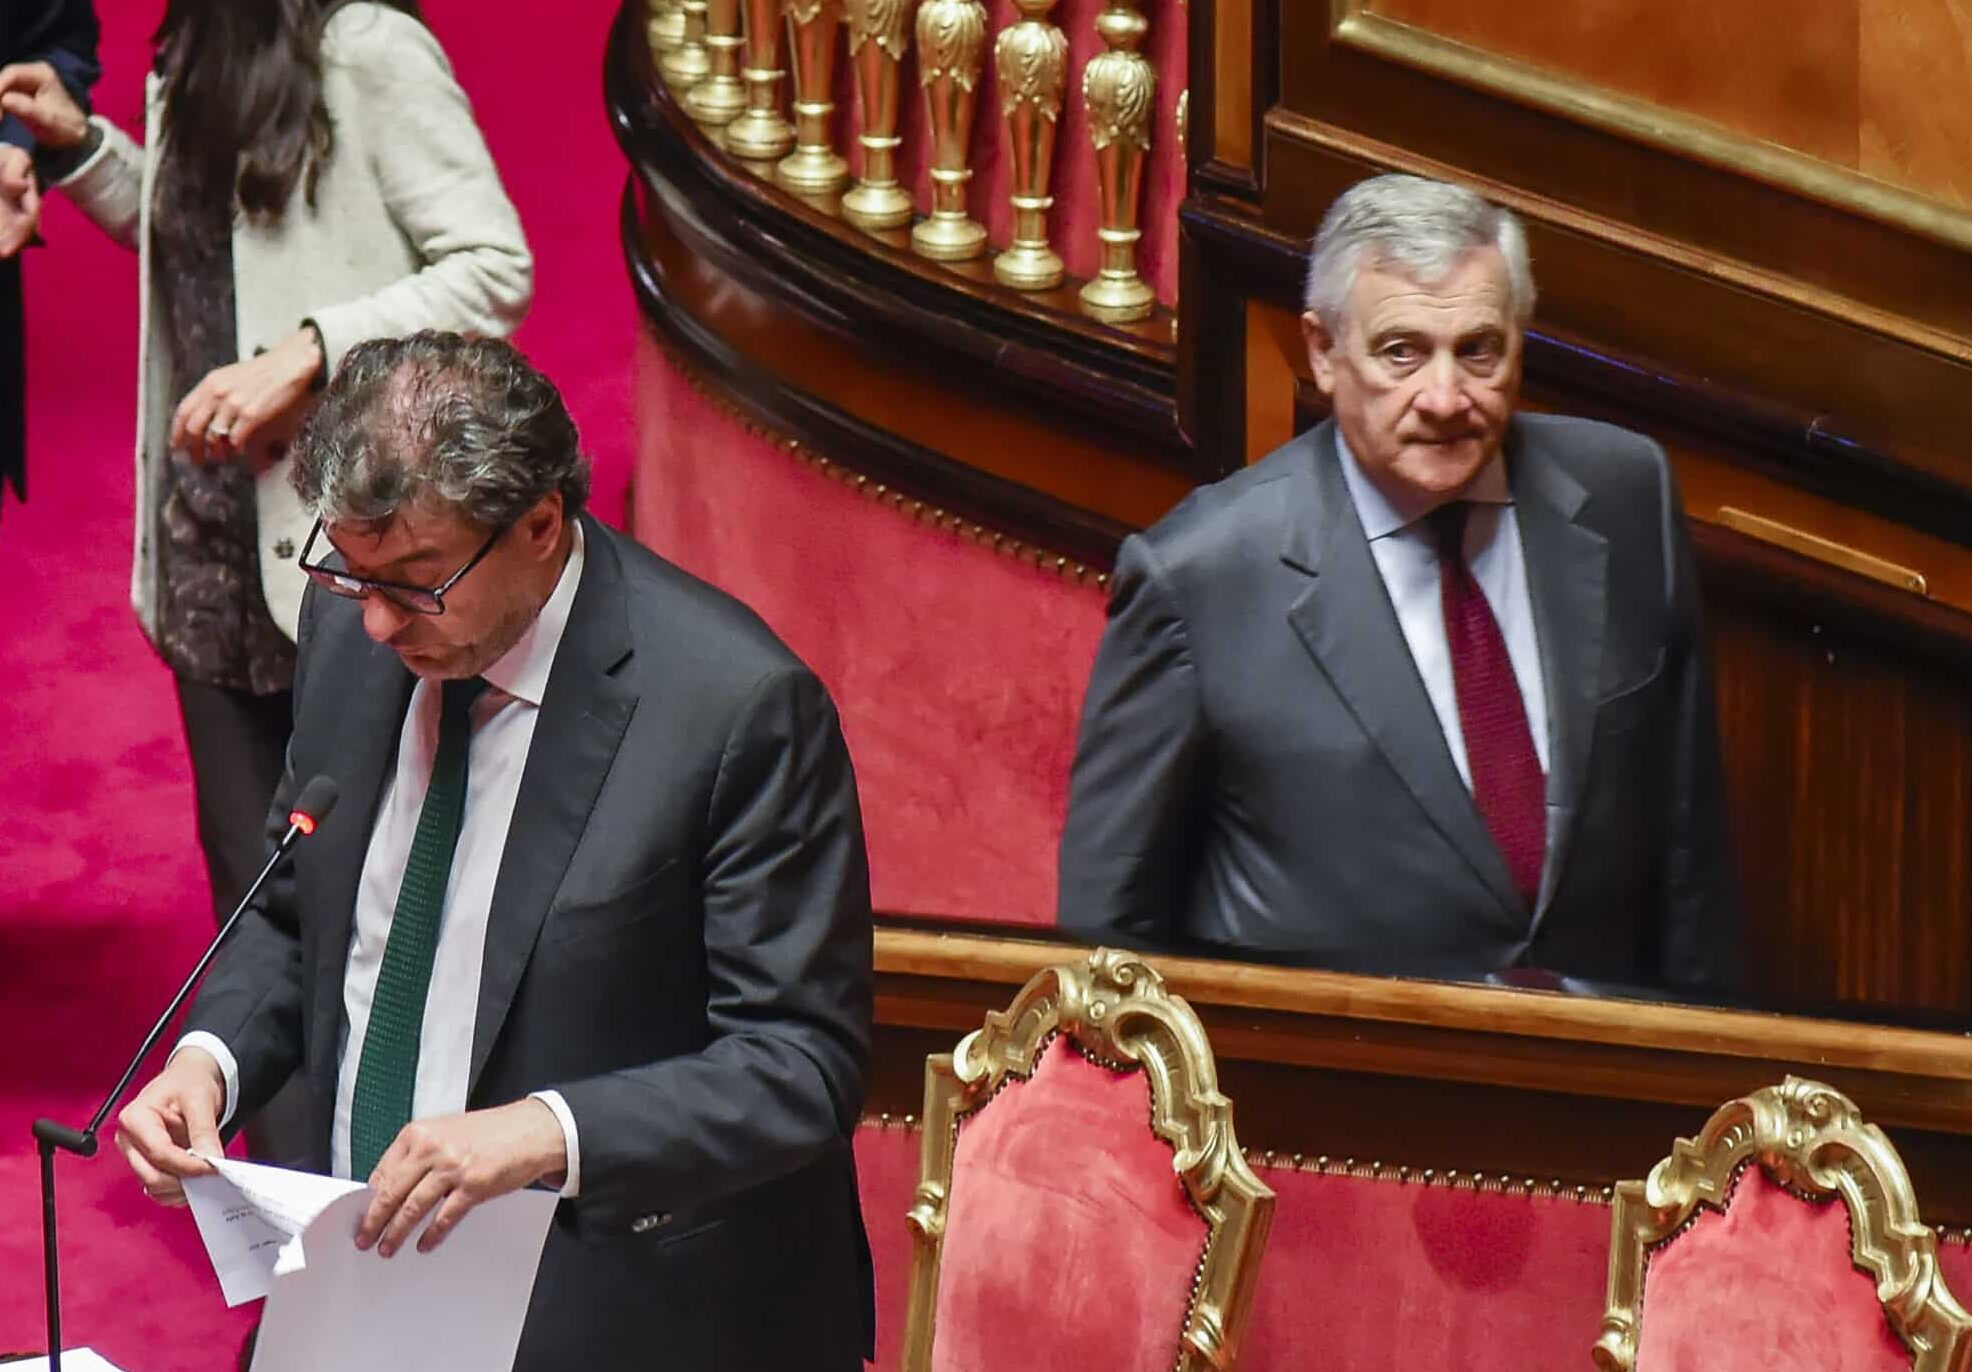 Il governo a pezzi sul Superbonus, volano gli stracci a destra: Tajani si dissocia e scarica tutto su Giorgetti